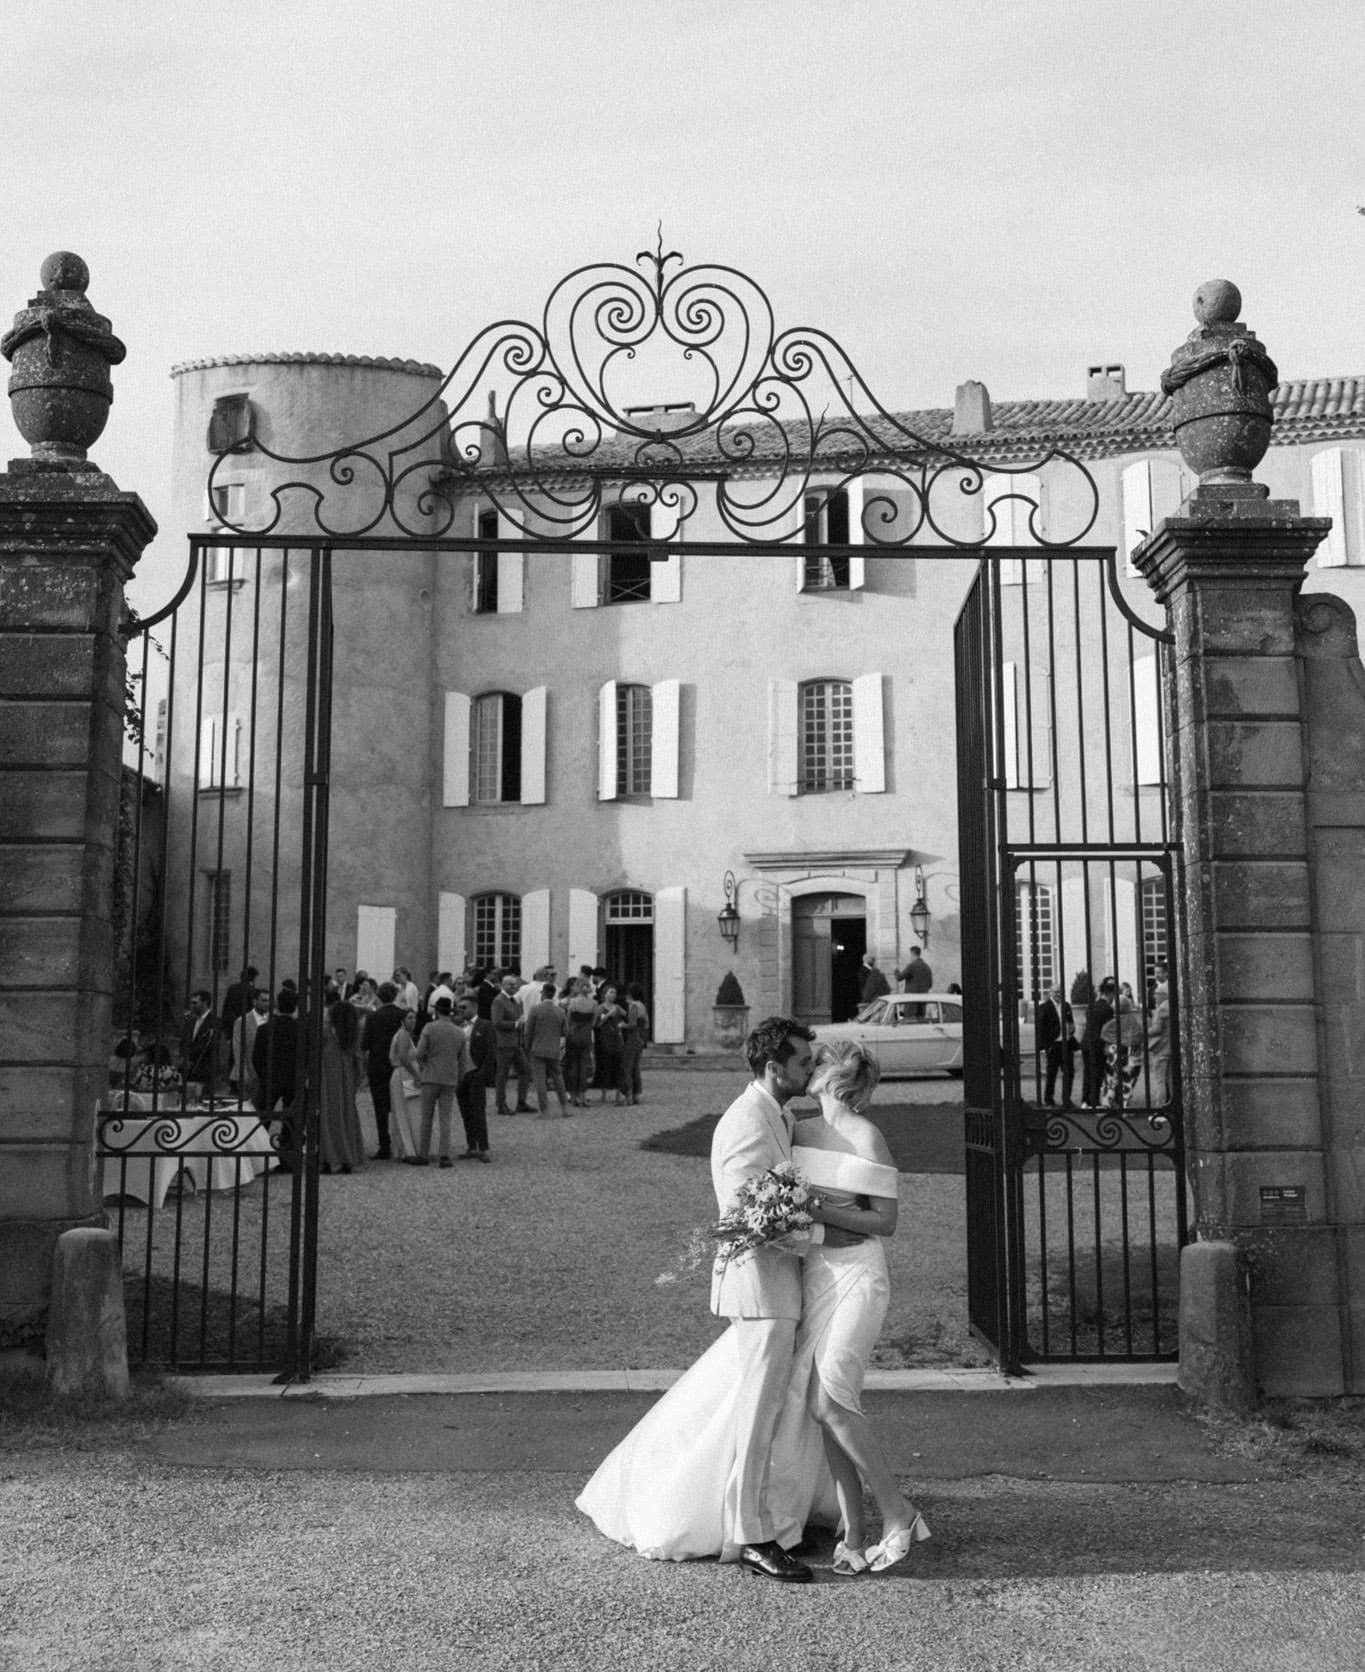 Boda romántica en un château del sur de Francia, capturada en película y digital